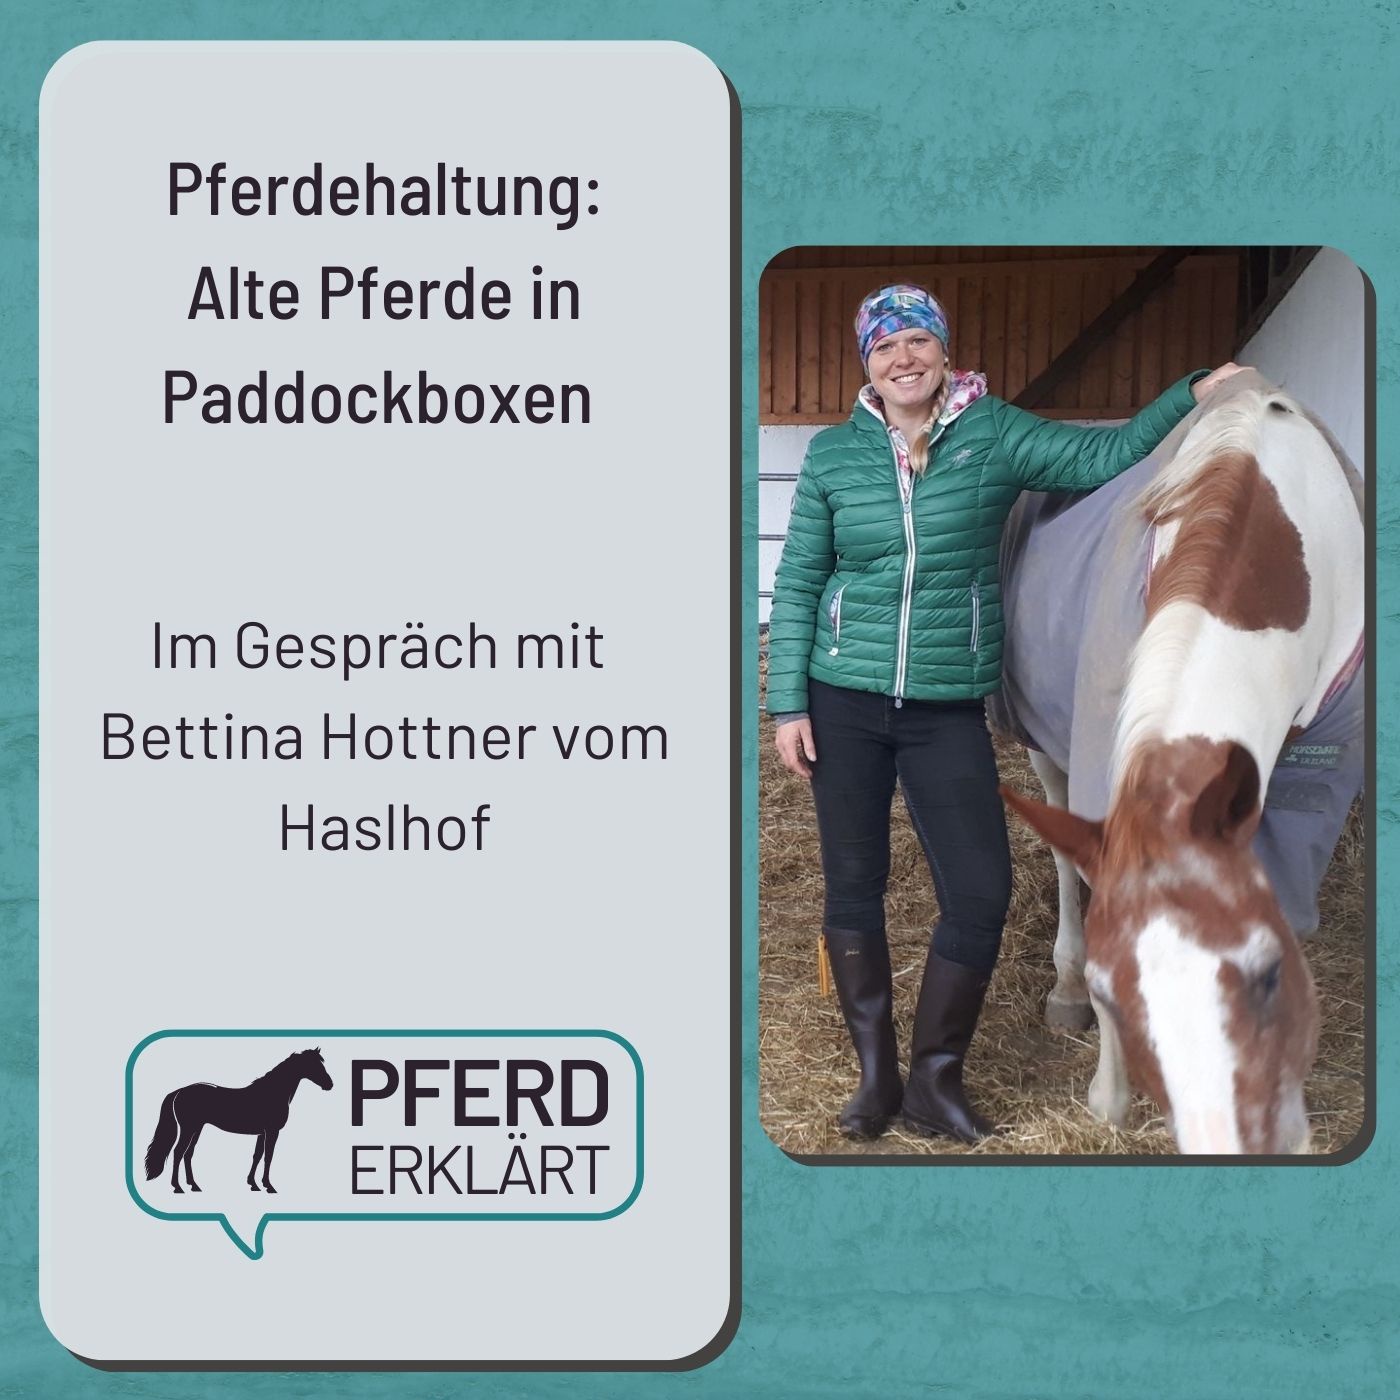 Pferdehaltung: Alte Pferde in Paddockboxen. Im Gespräch mit Bettina Hottner